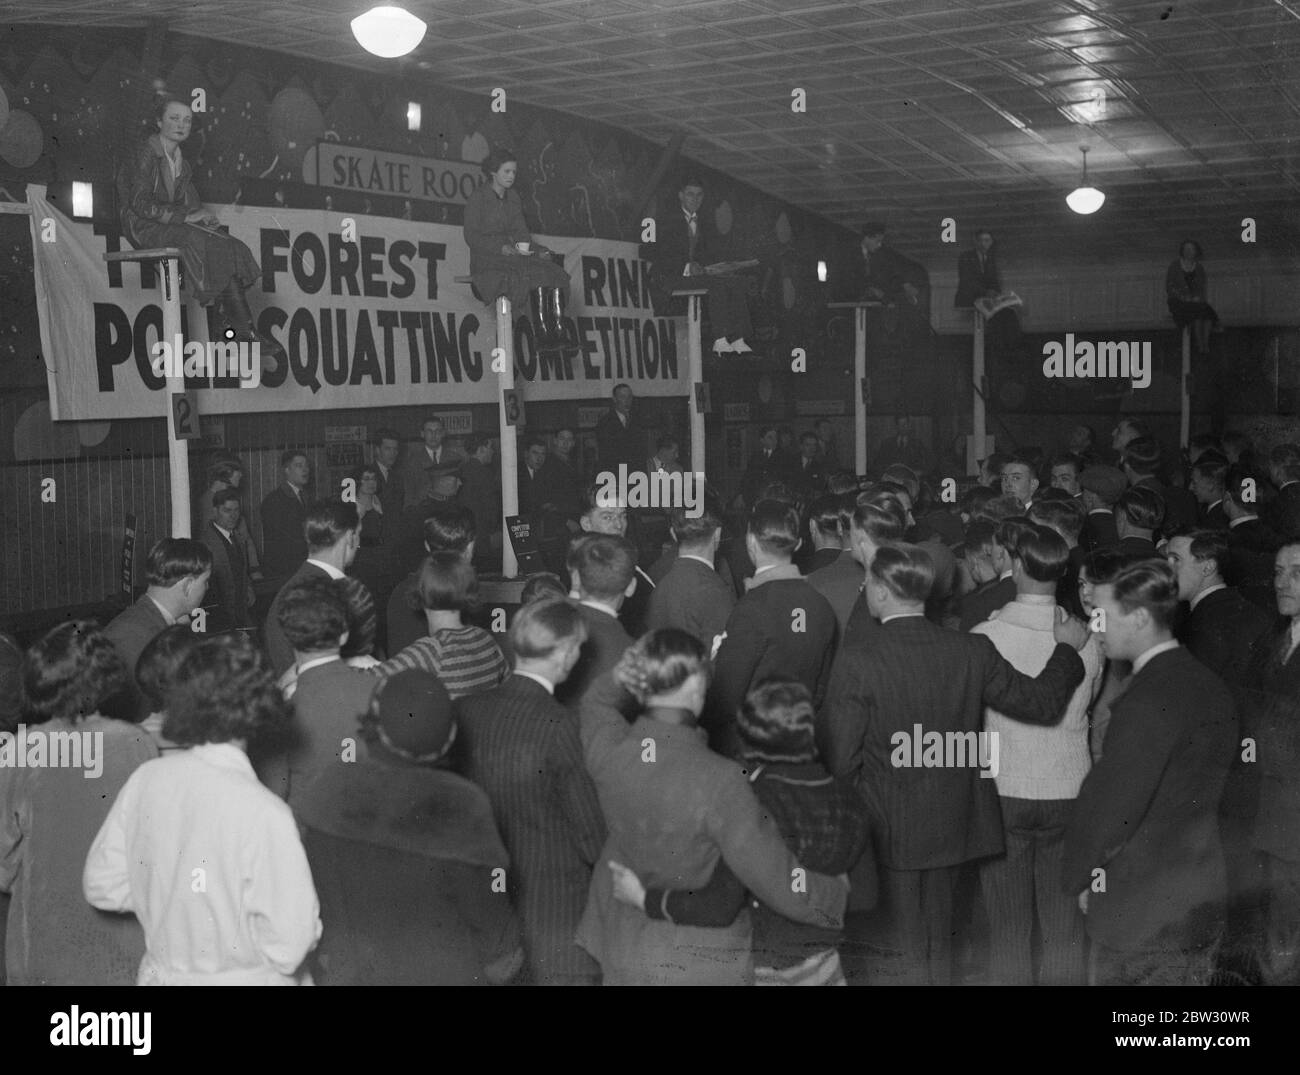 Premier concours de squating de poteau de Londres . Des records d'endurance freak se sont propagé à l'Angleterre . 29 janvier 1932 Banque D'Images